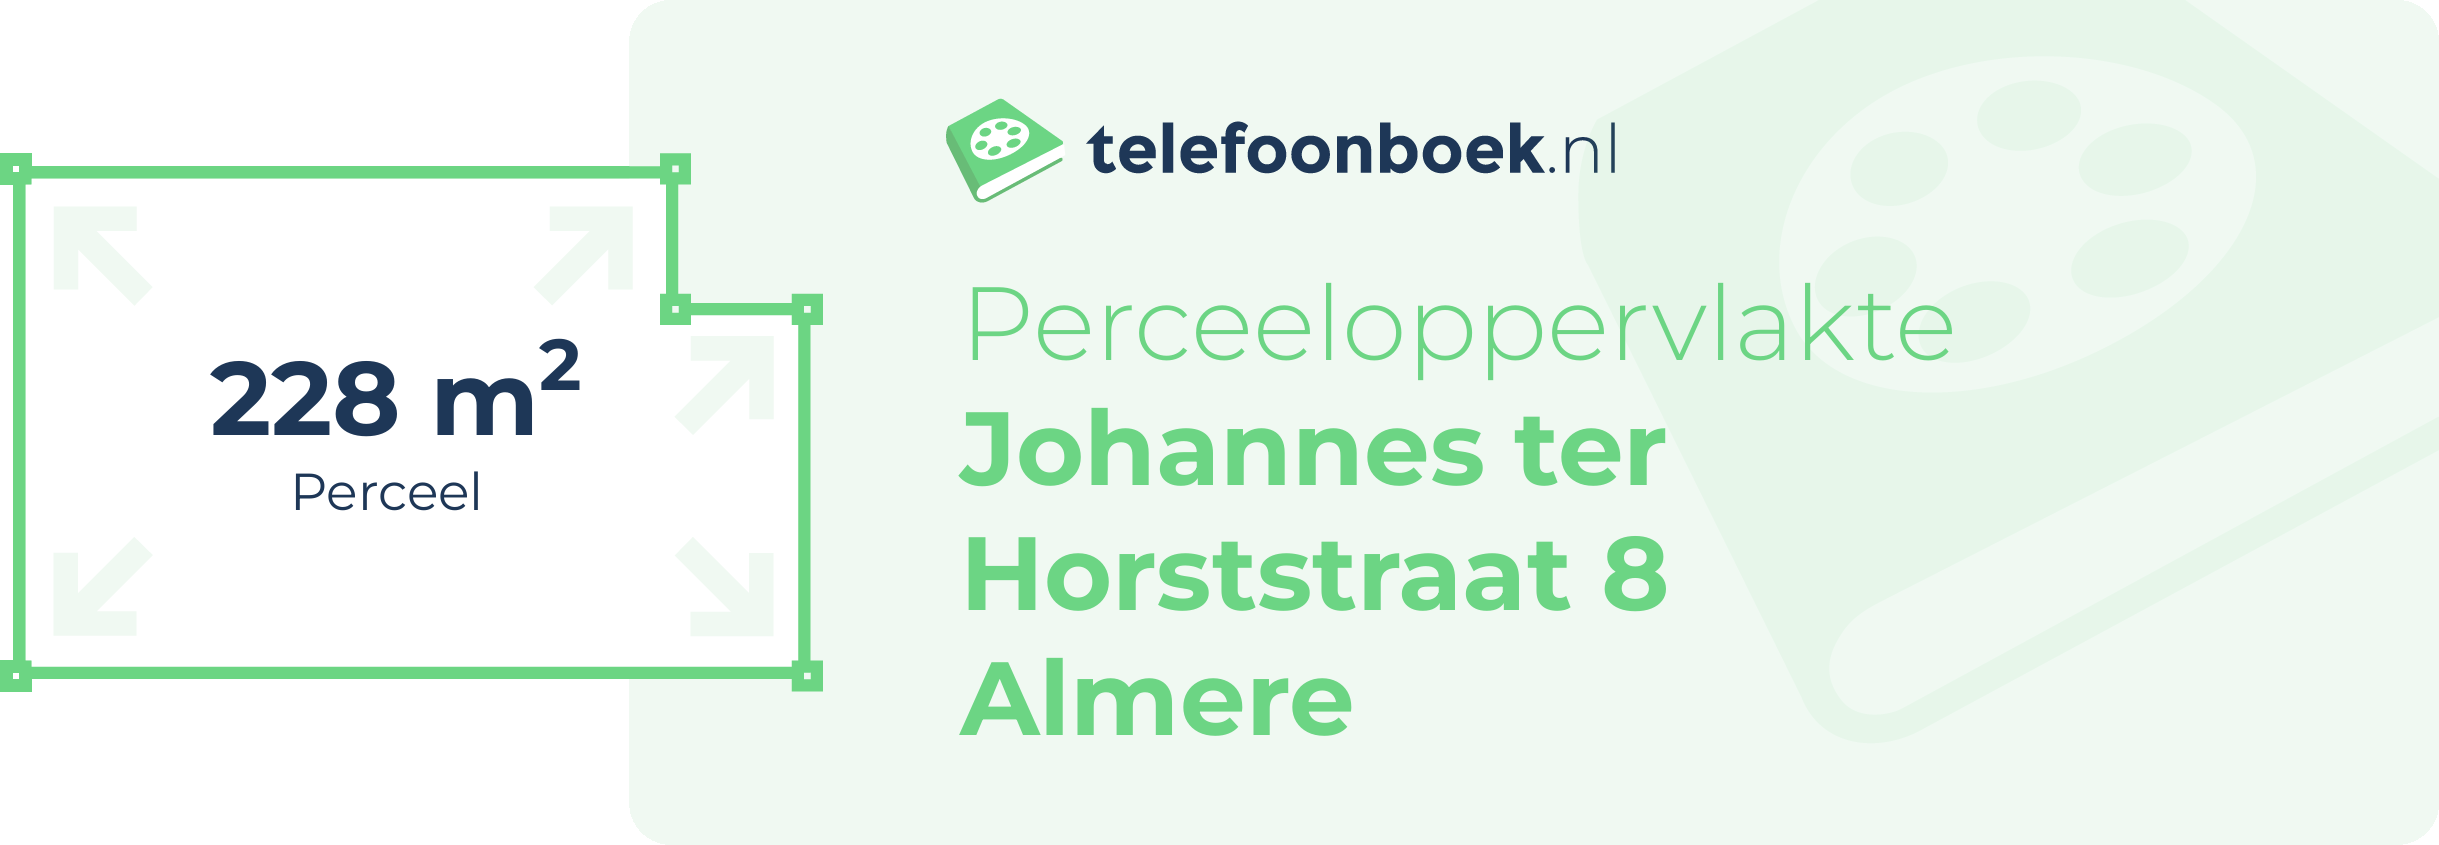 Perceeloppervlakte Johannes Ter Horststraat 8 Almere